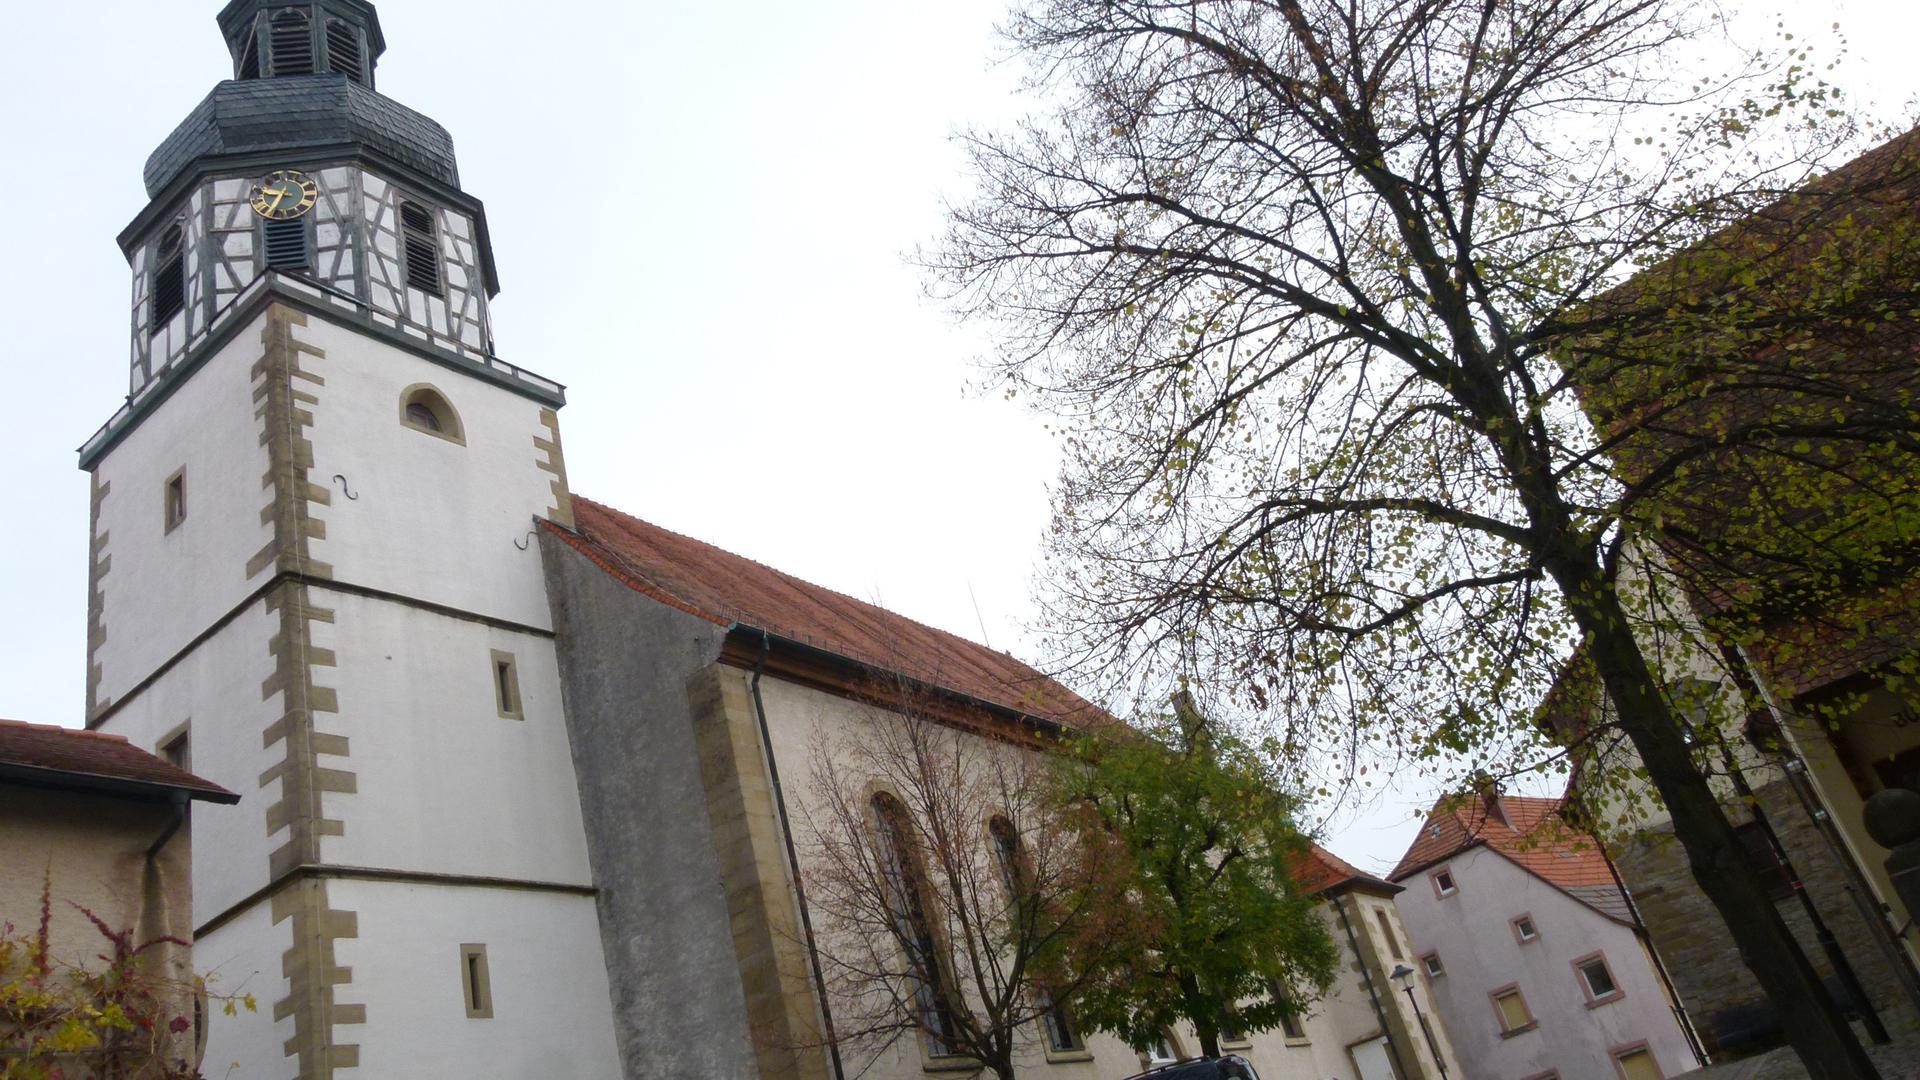 St. Martinskirche in Gochsheim 